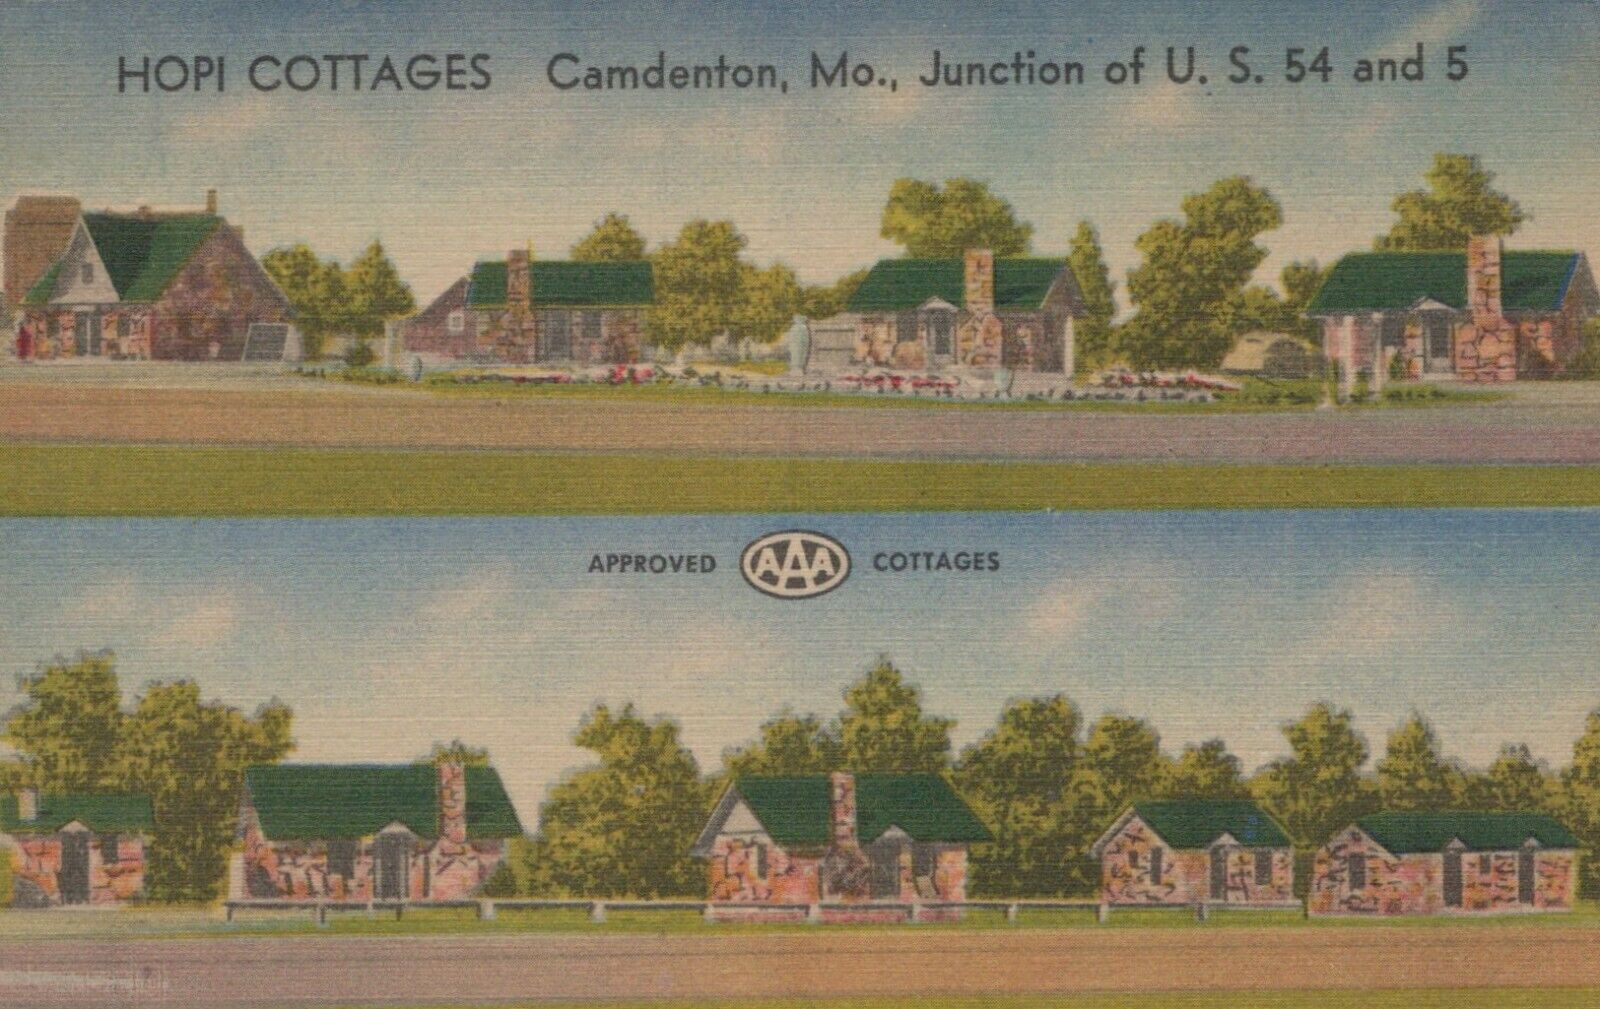 Hopi Modern Cottages At Lake Of The Ozarks Camdenton MO Vintage Linen Post Card